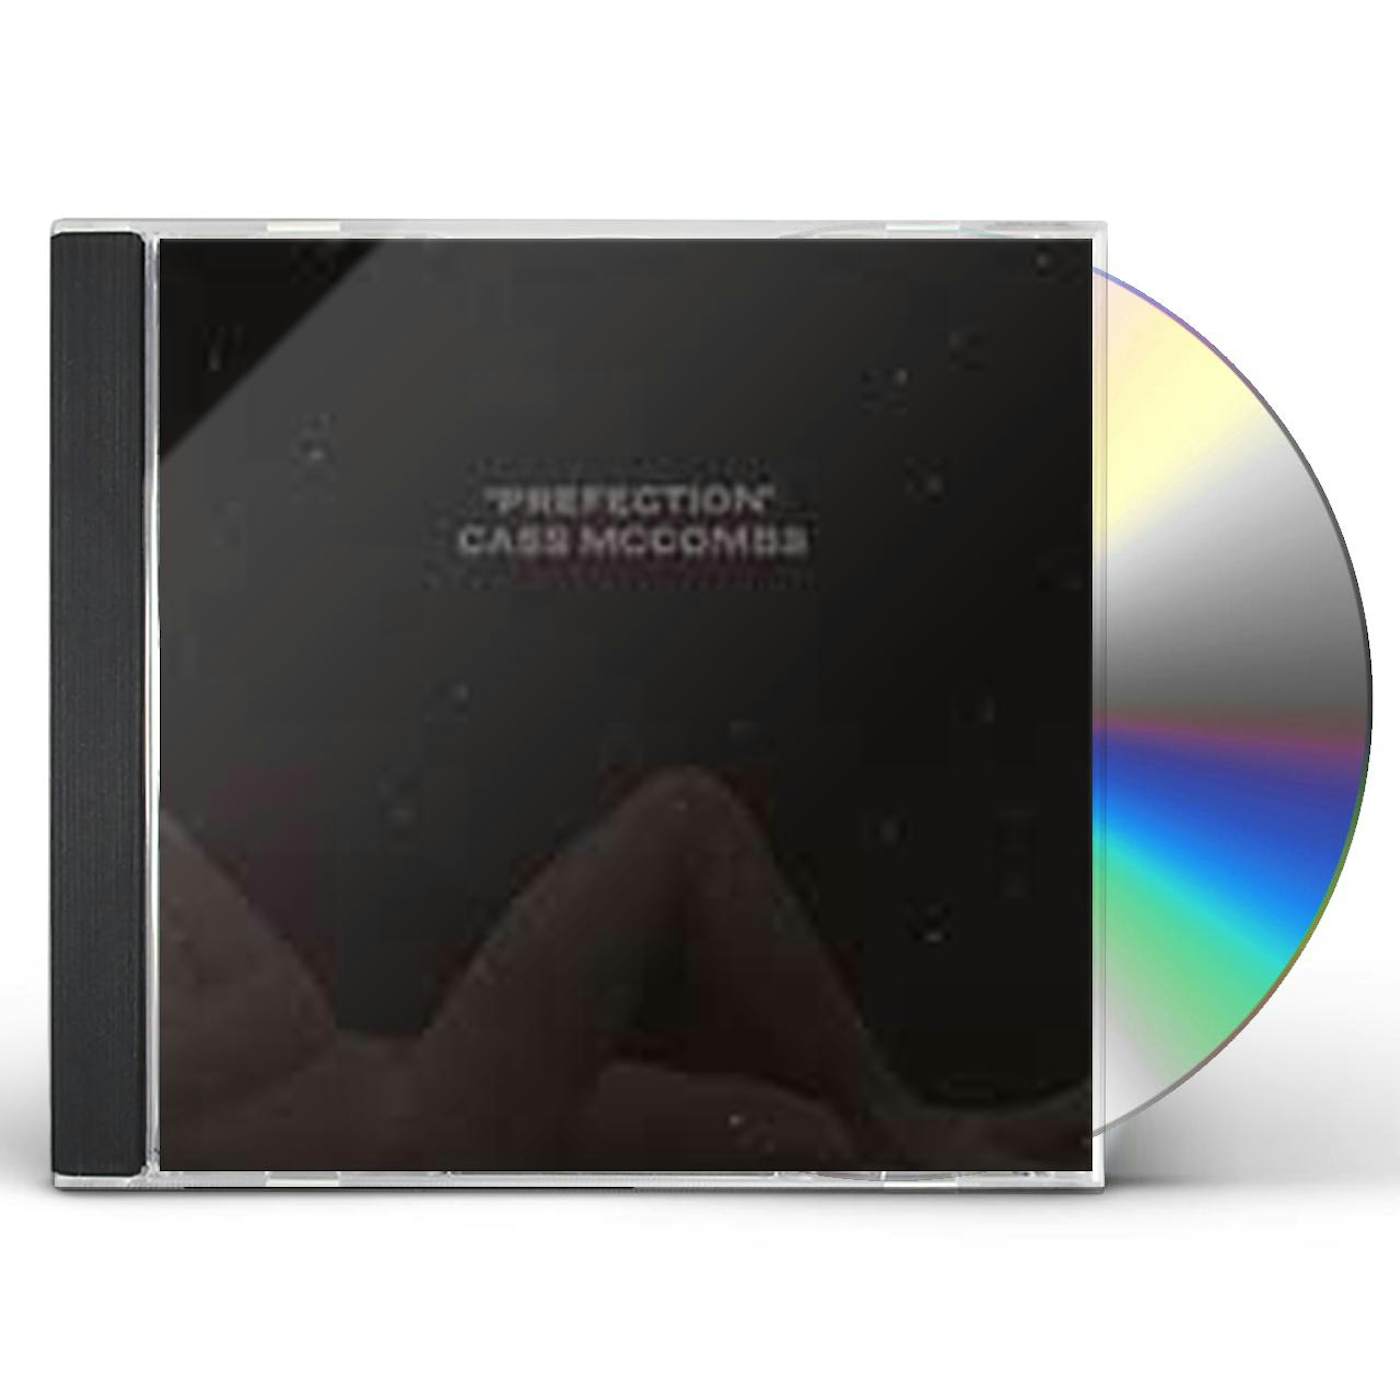 Cass McCombs PREFECTION CD